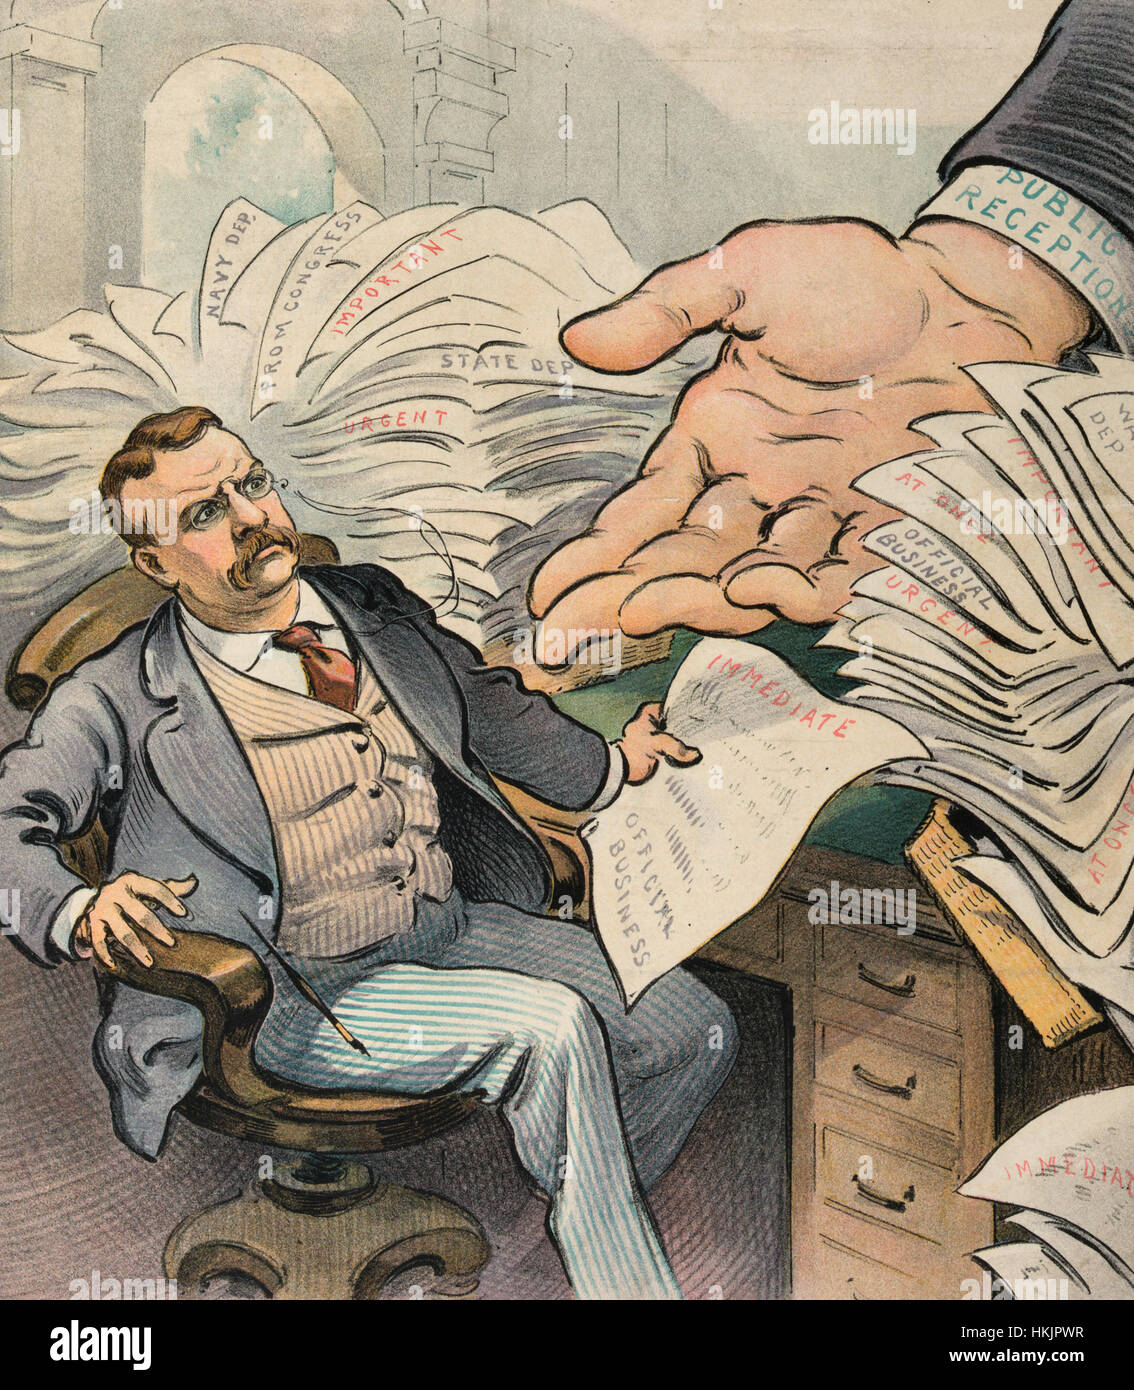 Capitol lästig - politische Karikatur zeigt Präsident Theodore Roosevelt sitzen am Schreibtisch, der mit Papieren, seine sofortige Aufmerksamkeit erfordert überwältigt; durch die Stapel von Papier zu erreichen, ist eine große Hand, die mit der Bezeichnung "Öffentliche Empfänge". Die Karikatur impliziert, dass öffentliche Auftritte Zeit weg von seinen Amtspflichten in Anspruch nehmen.  1902 Stockfoto